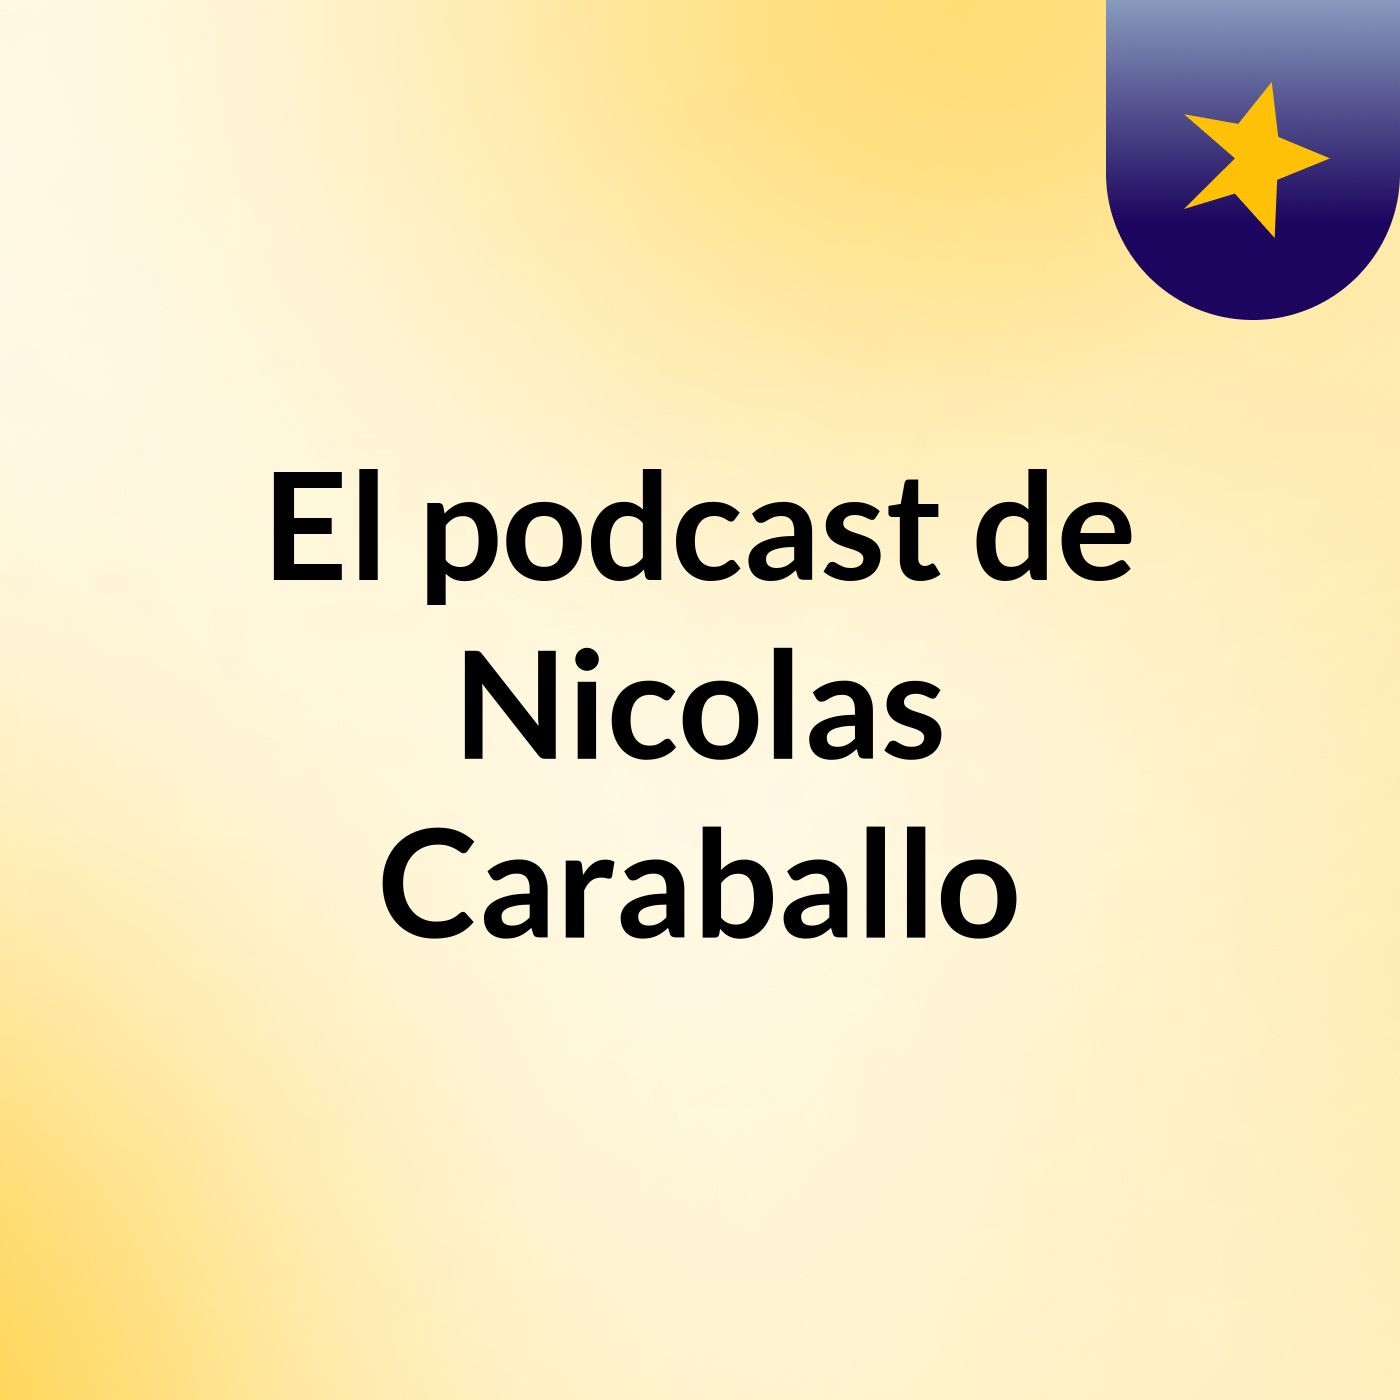 Episodio 43 - El podcast de Nicolas Caraballo